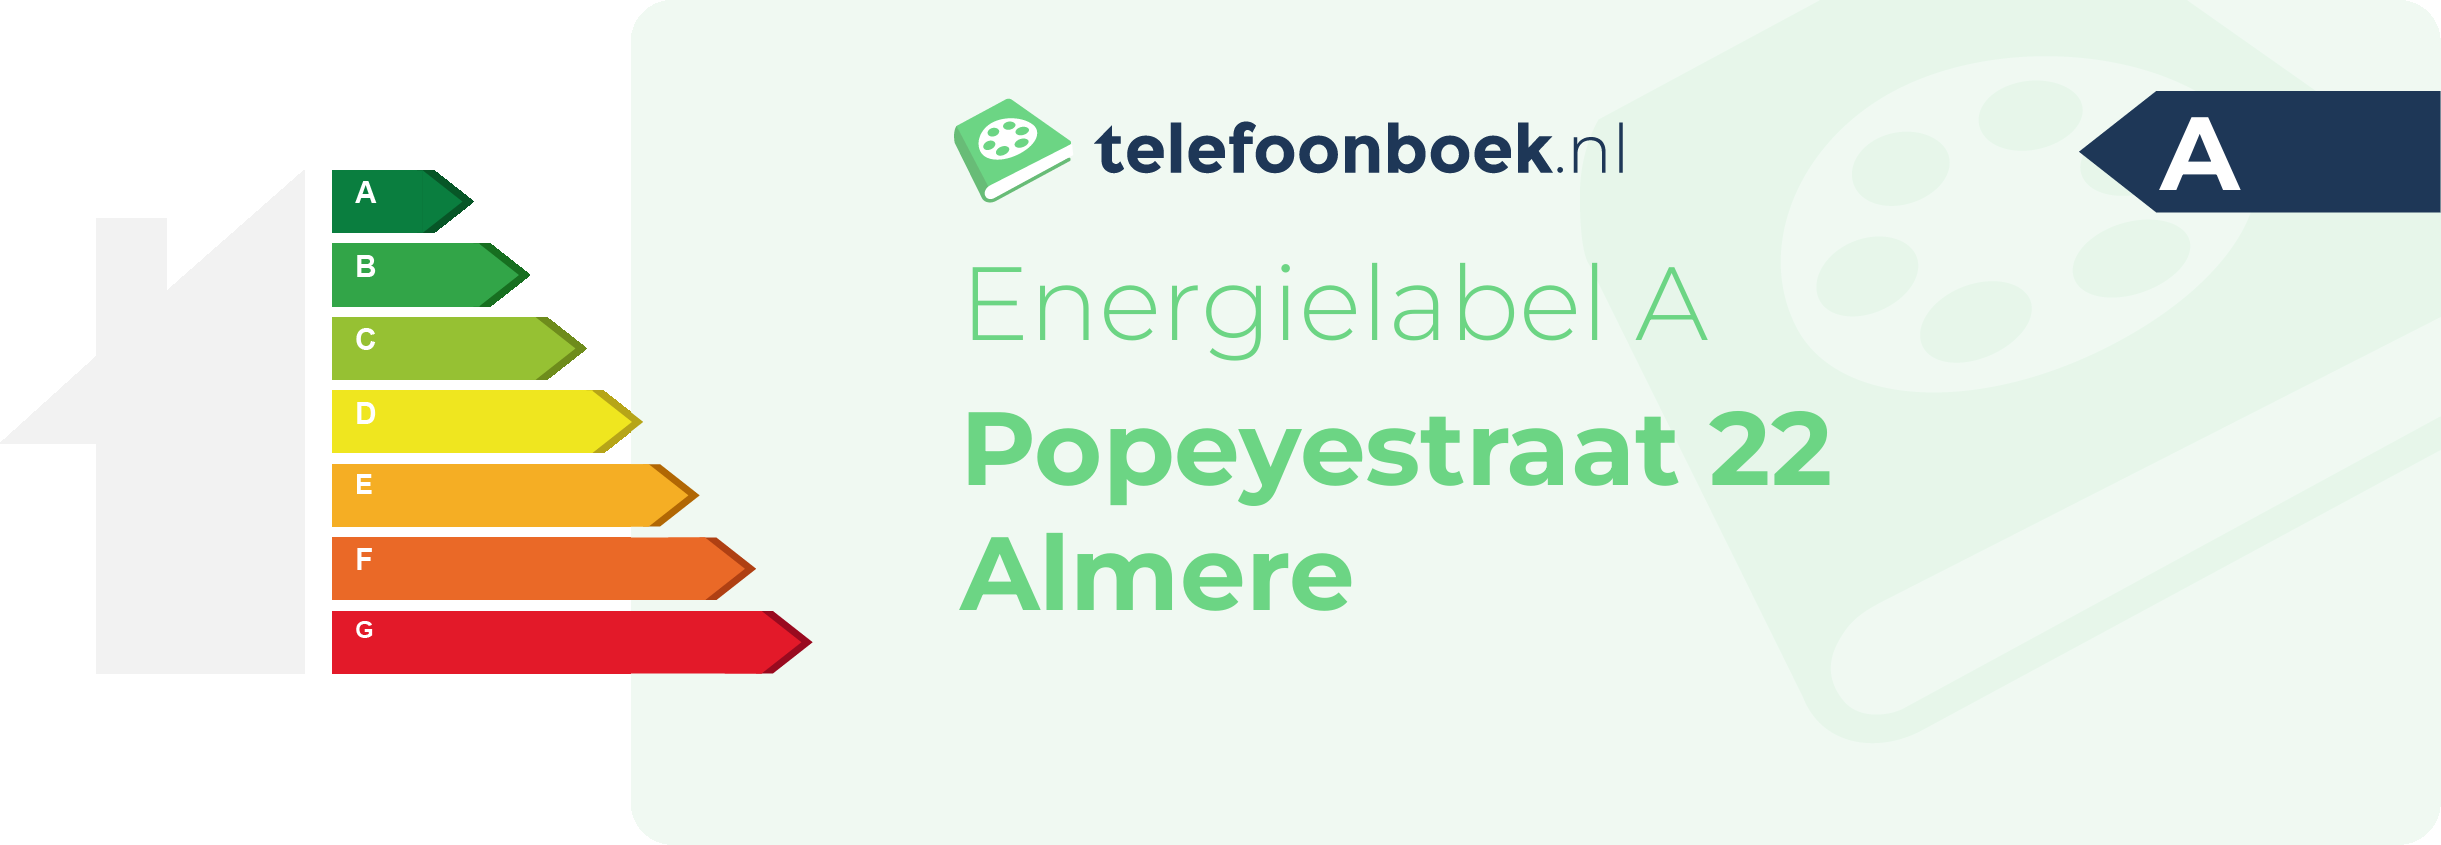 Energielabel Popeyestraat 22 Almere